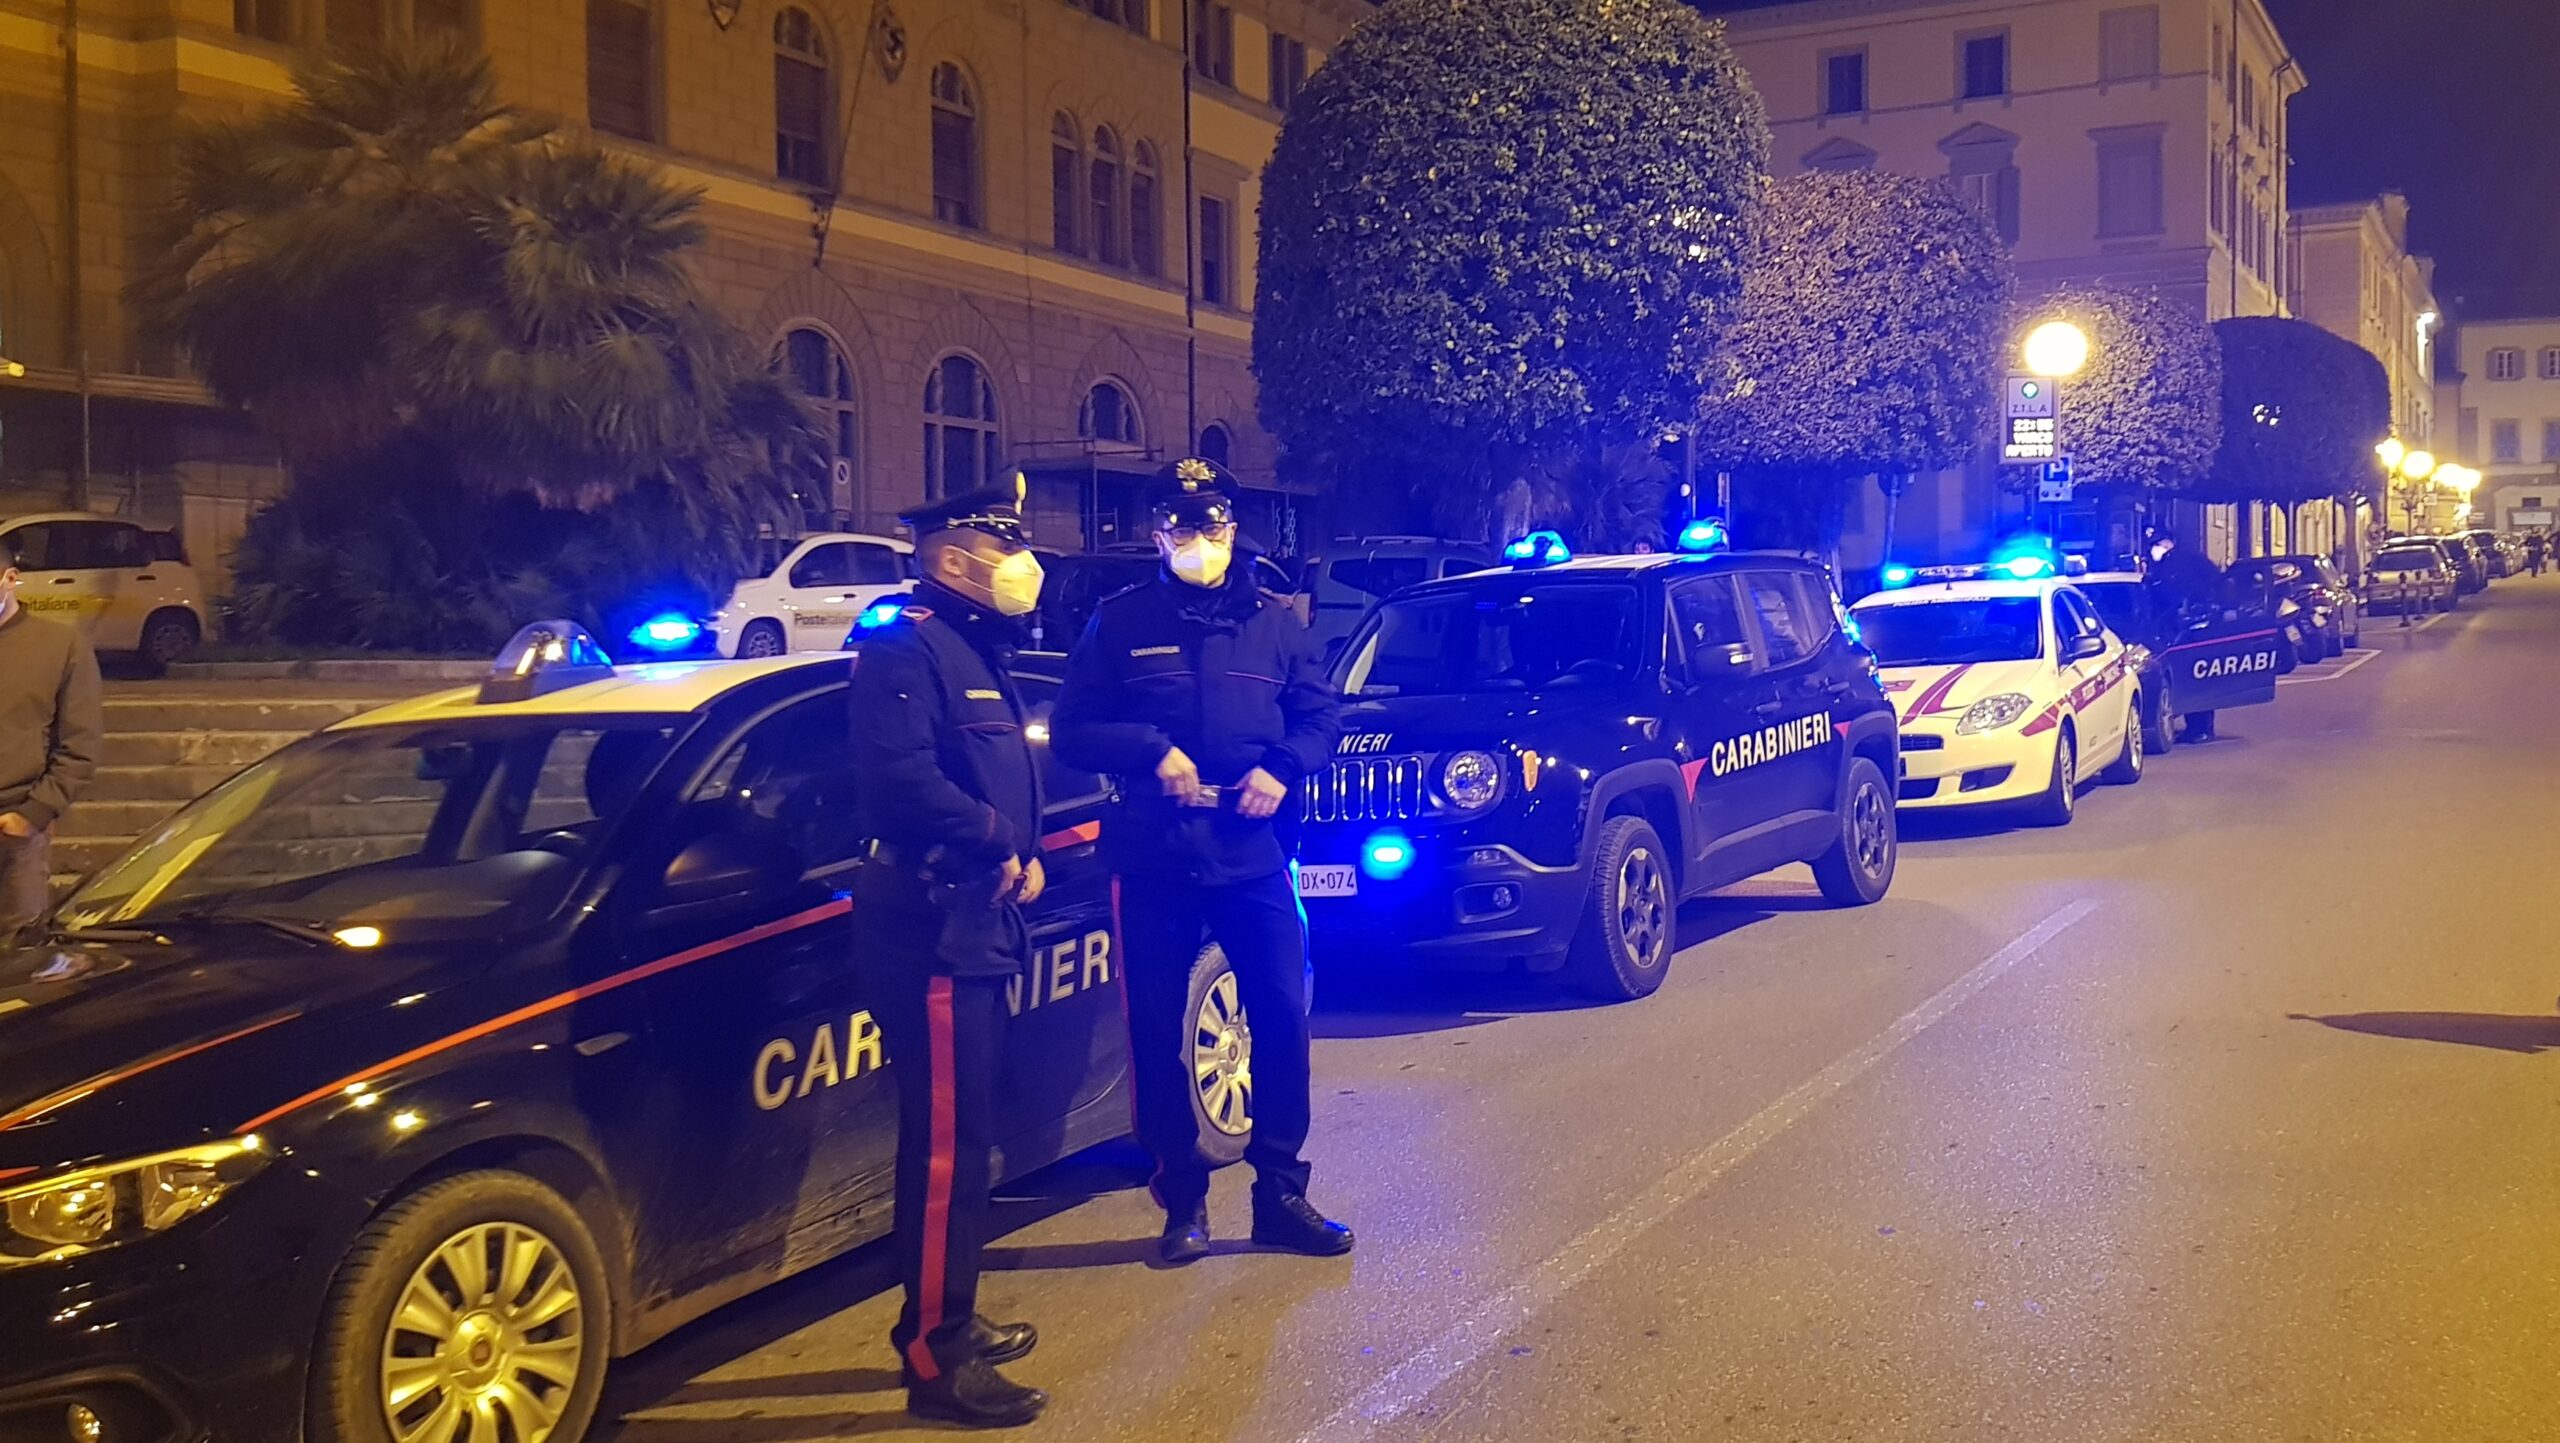 “Movida” nel centro storico: i carabinieri denunciano 5 persone a piede libero, 1 sanzionata per ubriachezza, 3 persone trovate in possesso di stupefacenti